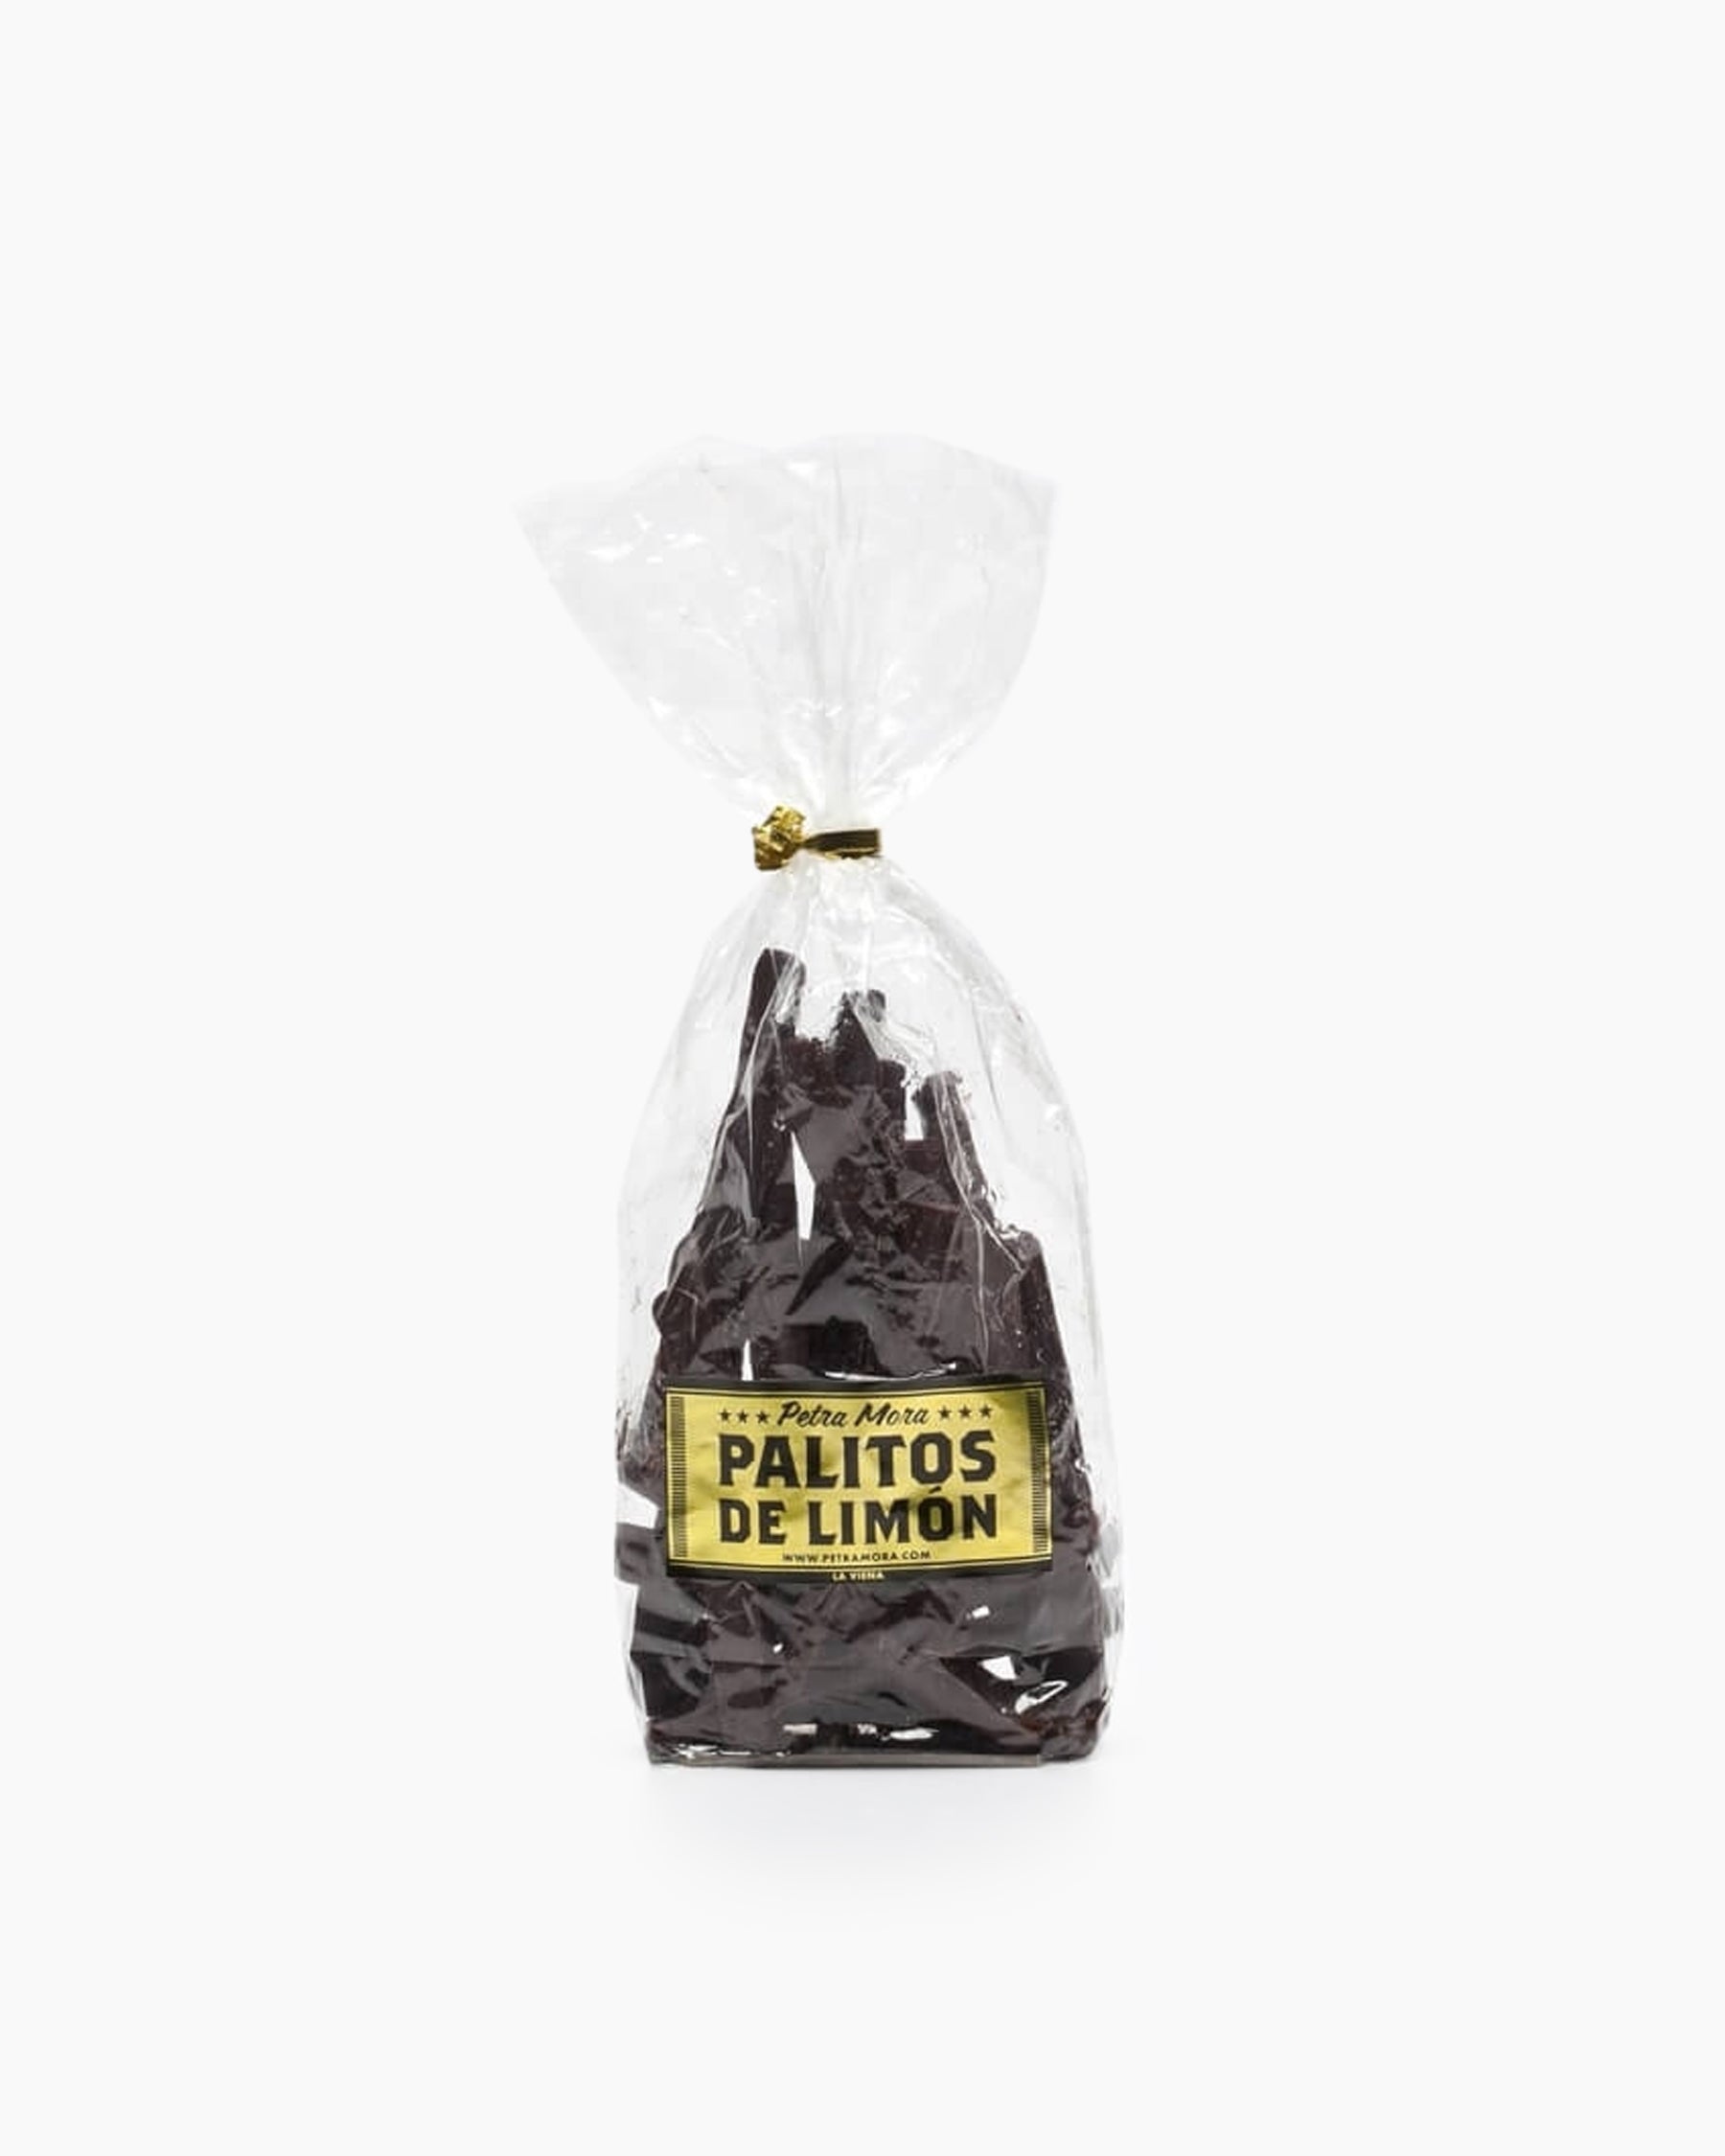 Palitos de limón cubiertos de chocolate negro